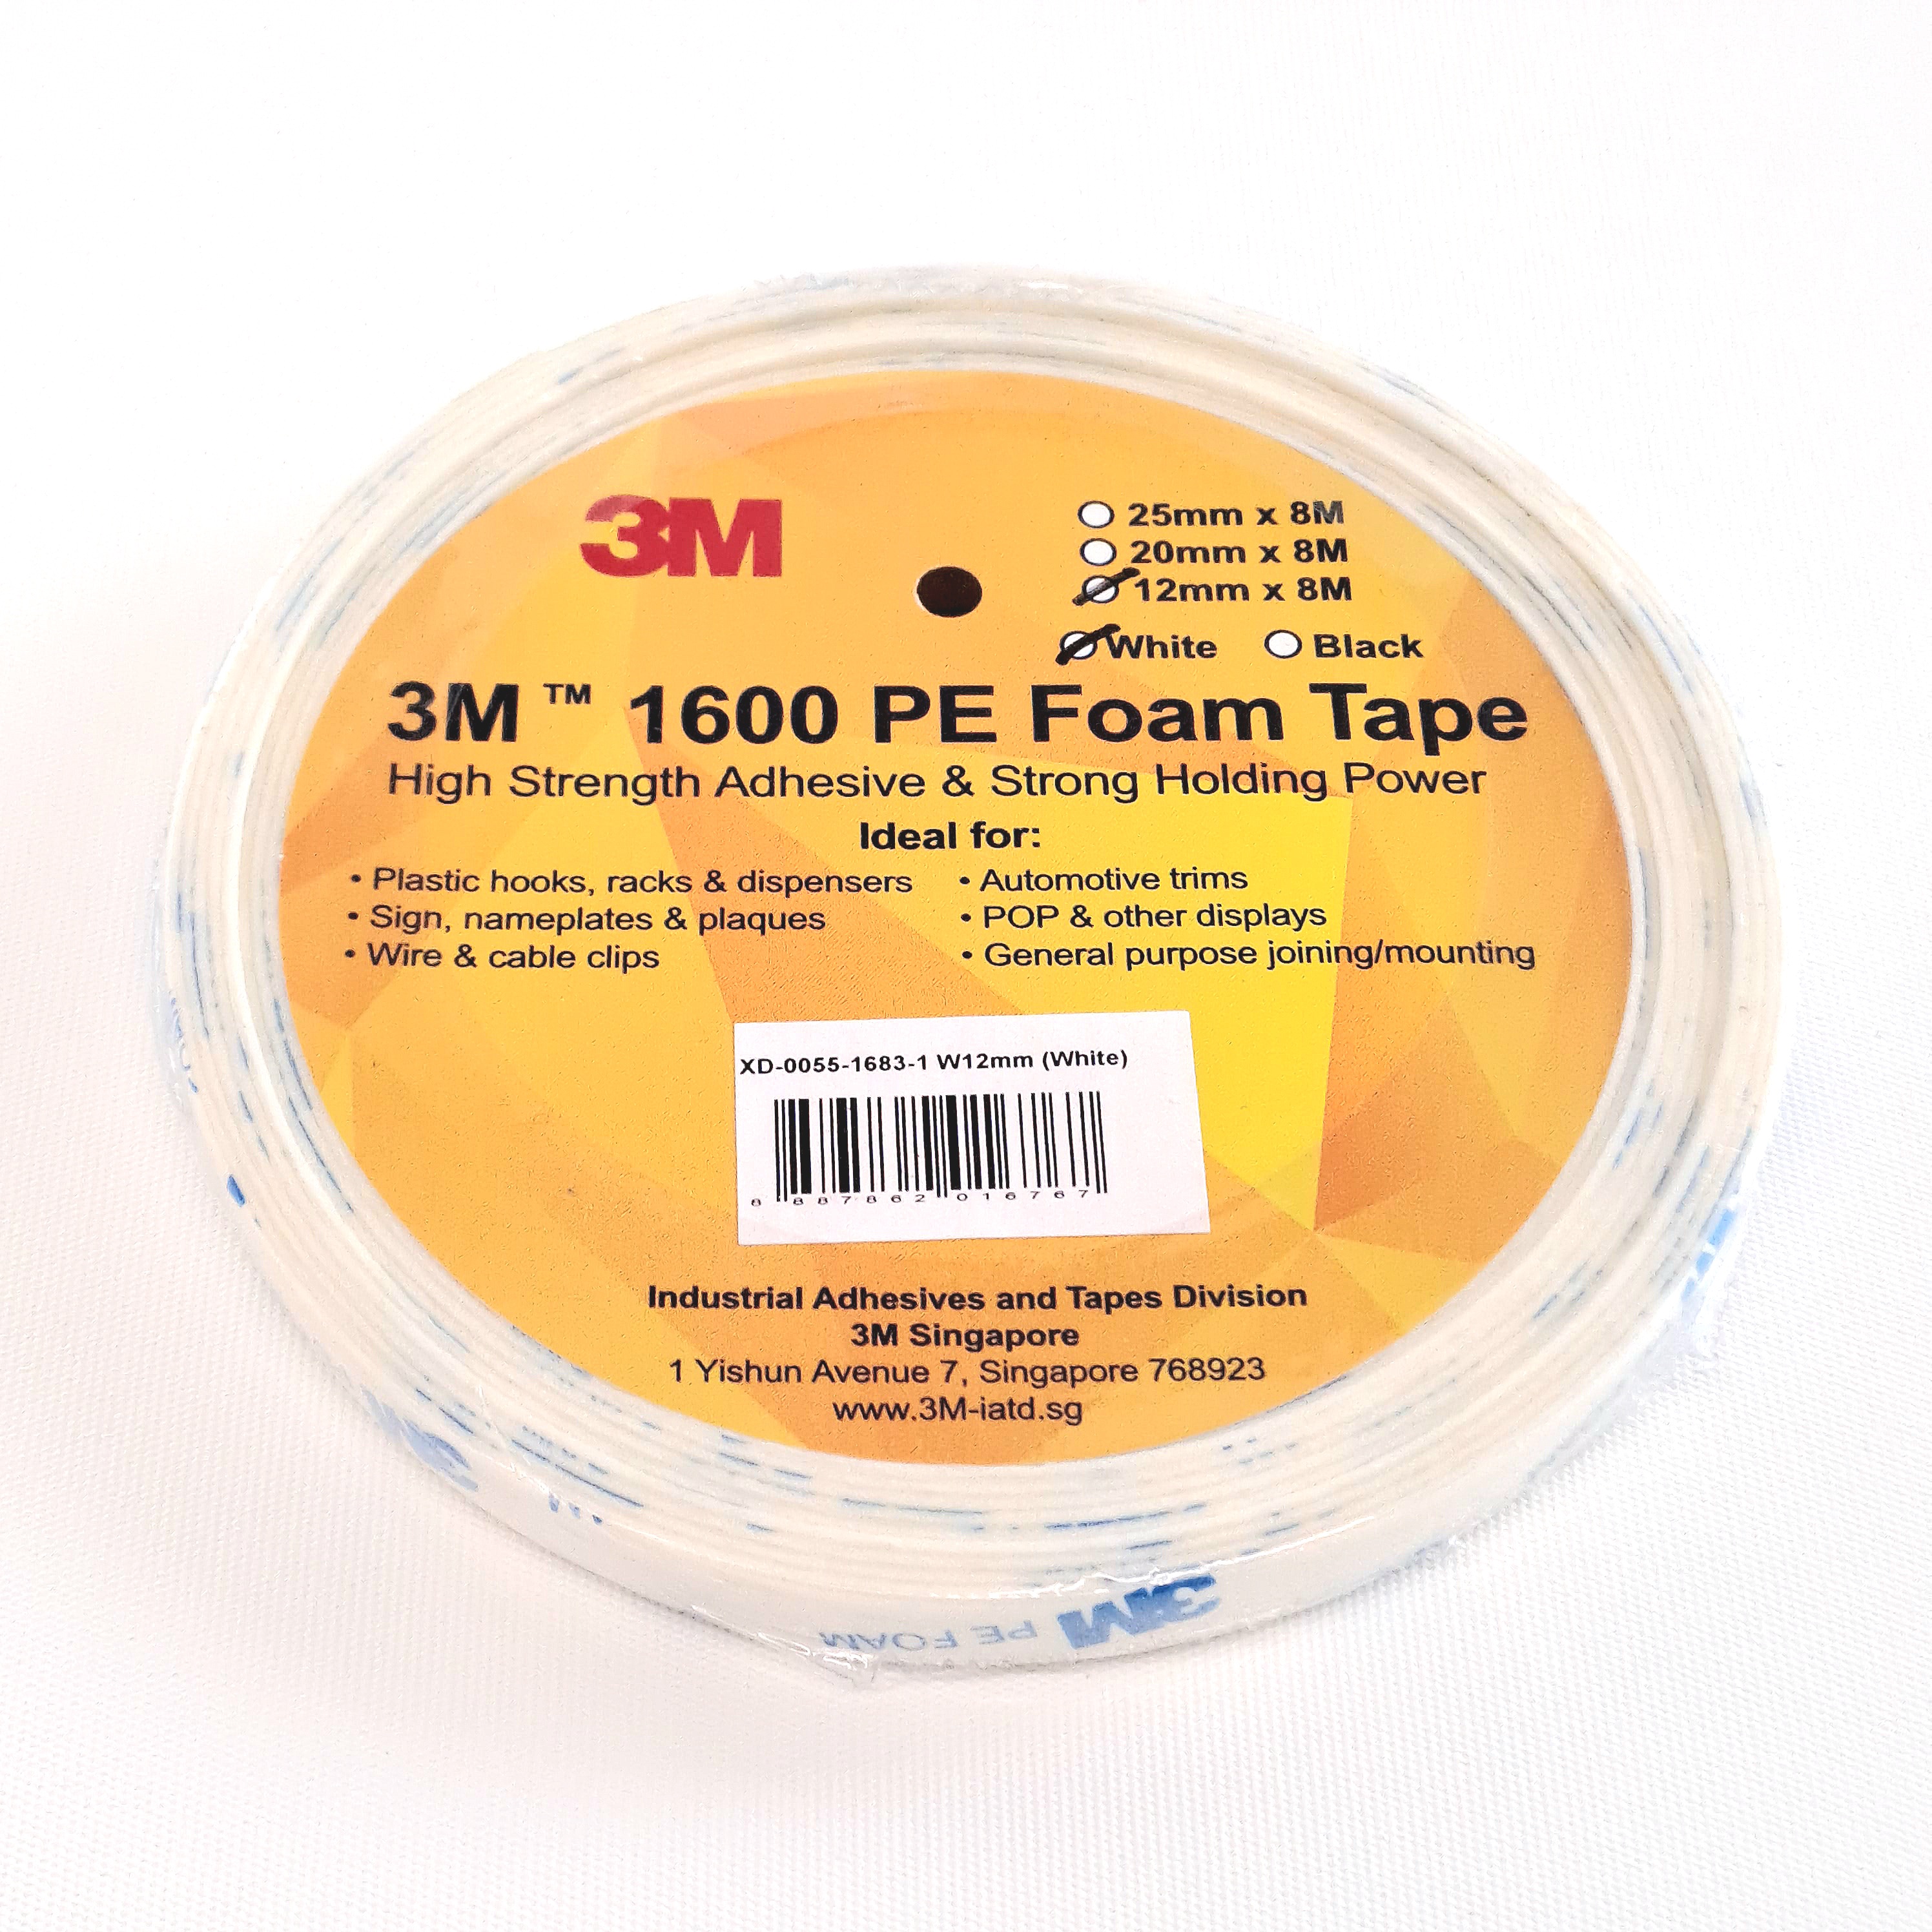 3M 1600 PE Foam Tape White 12mm x 8m